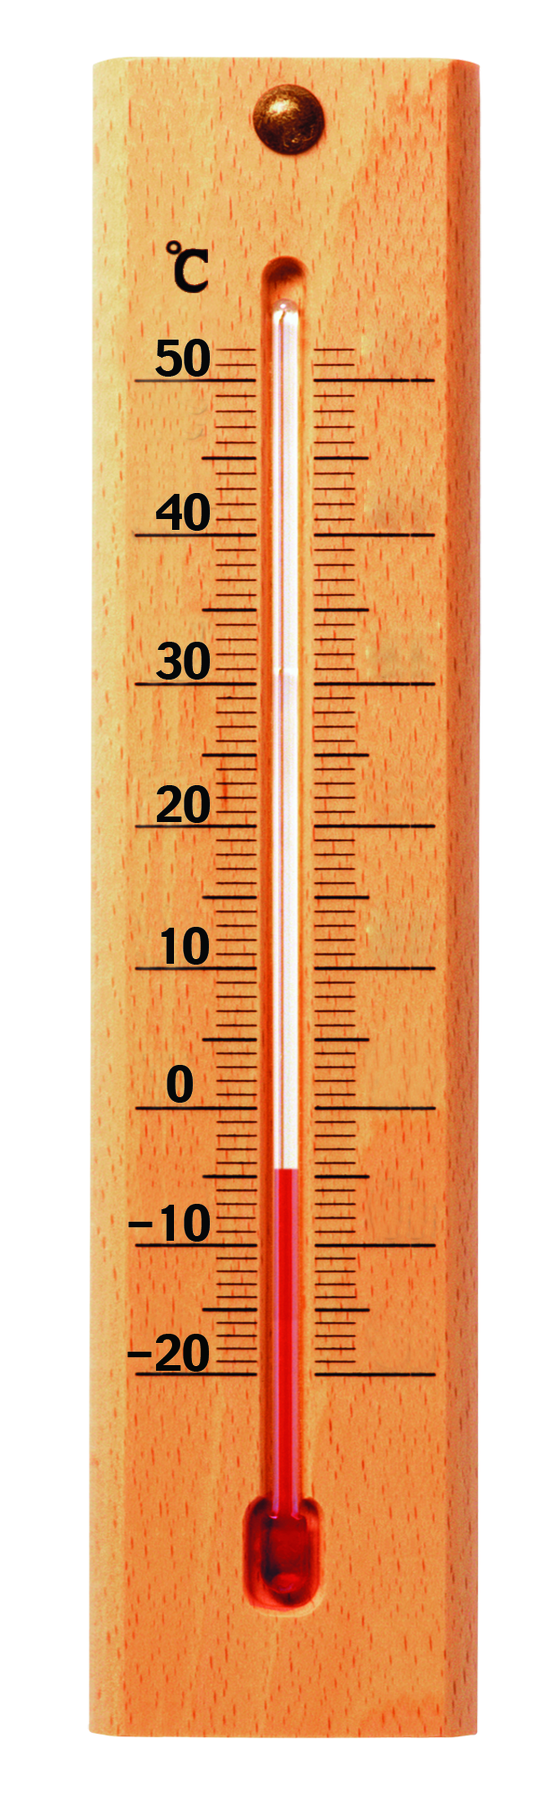 Fotografia. Termômetro na vertical sobre base de madeira, com graduações que indicam a medida da temperatura, em graus Célsius, grafadas ao lado da madeira.